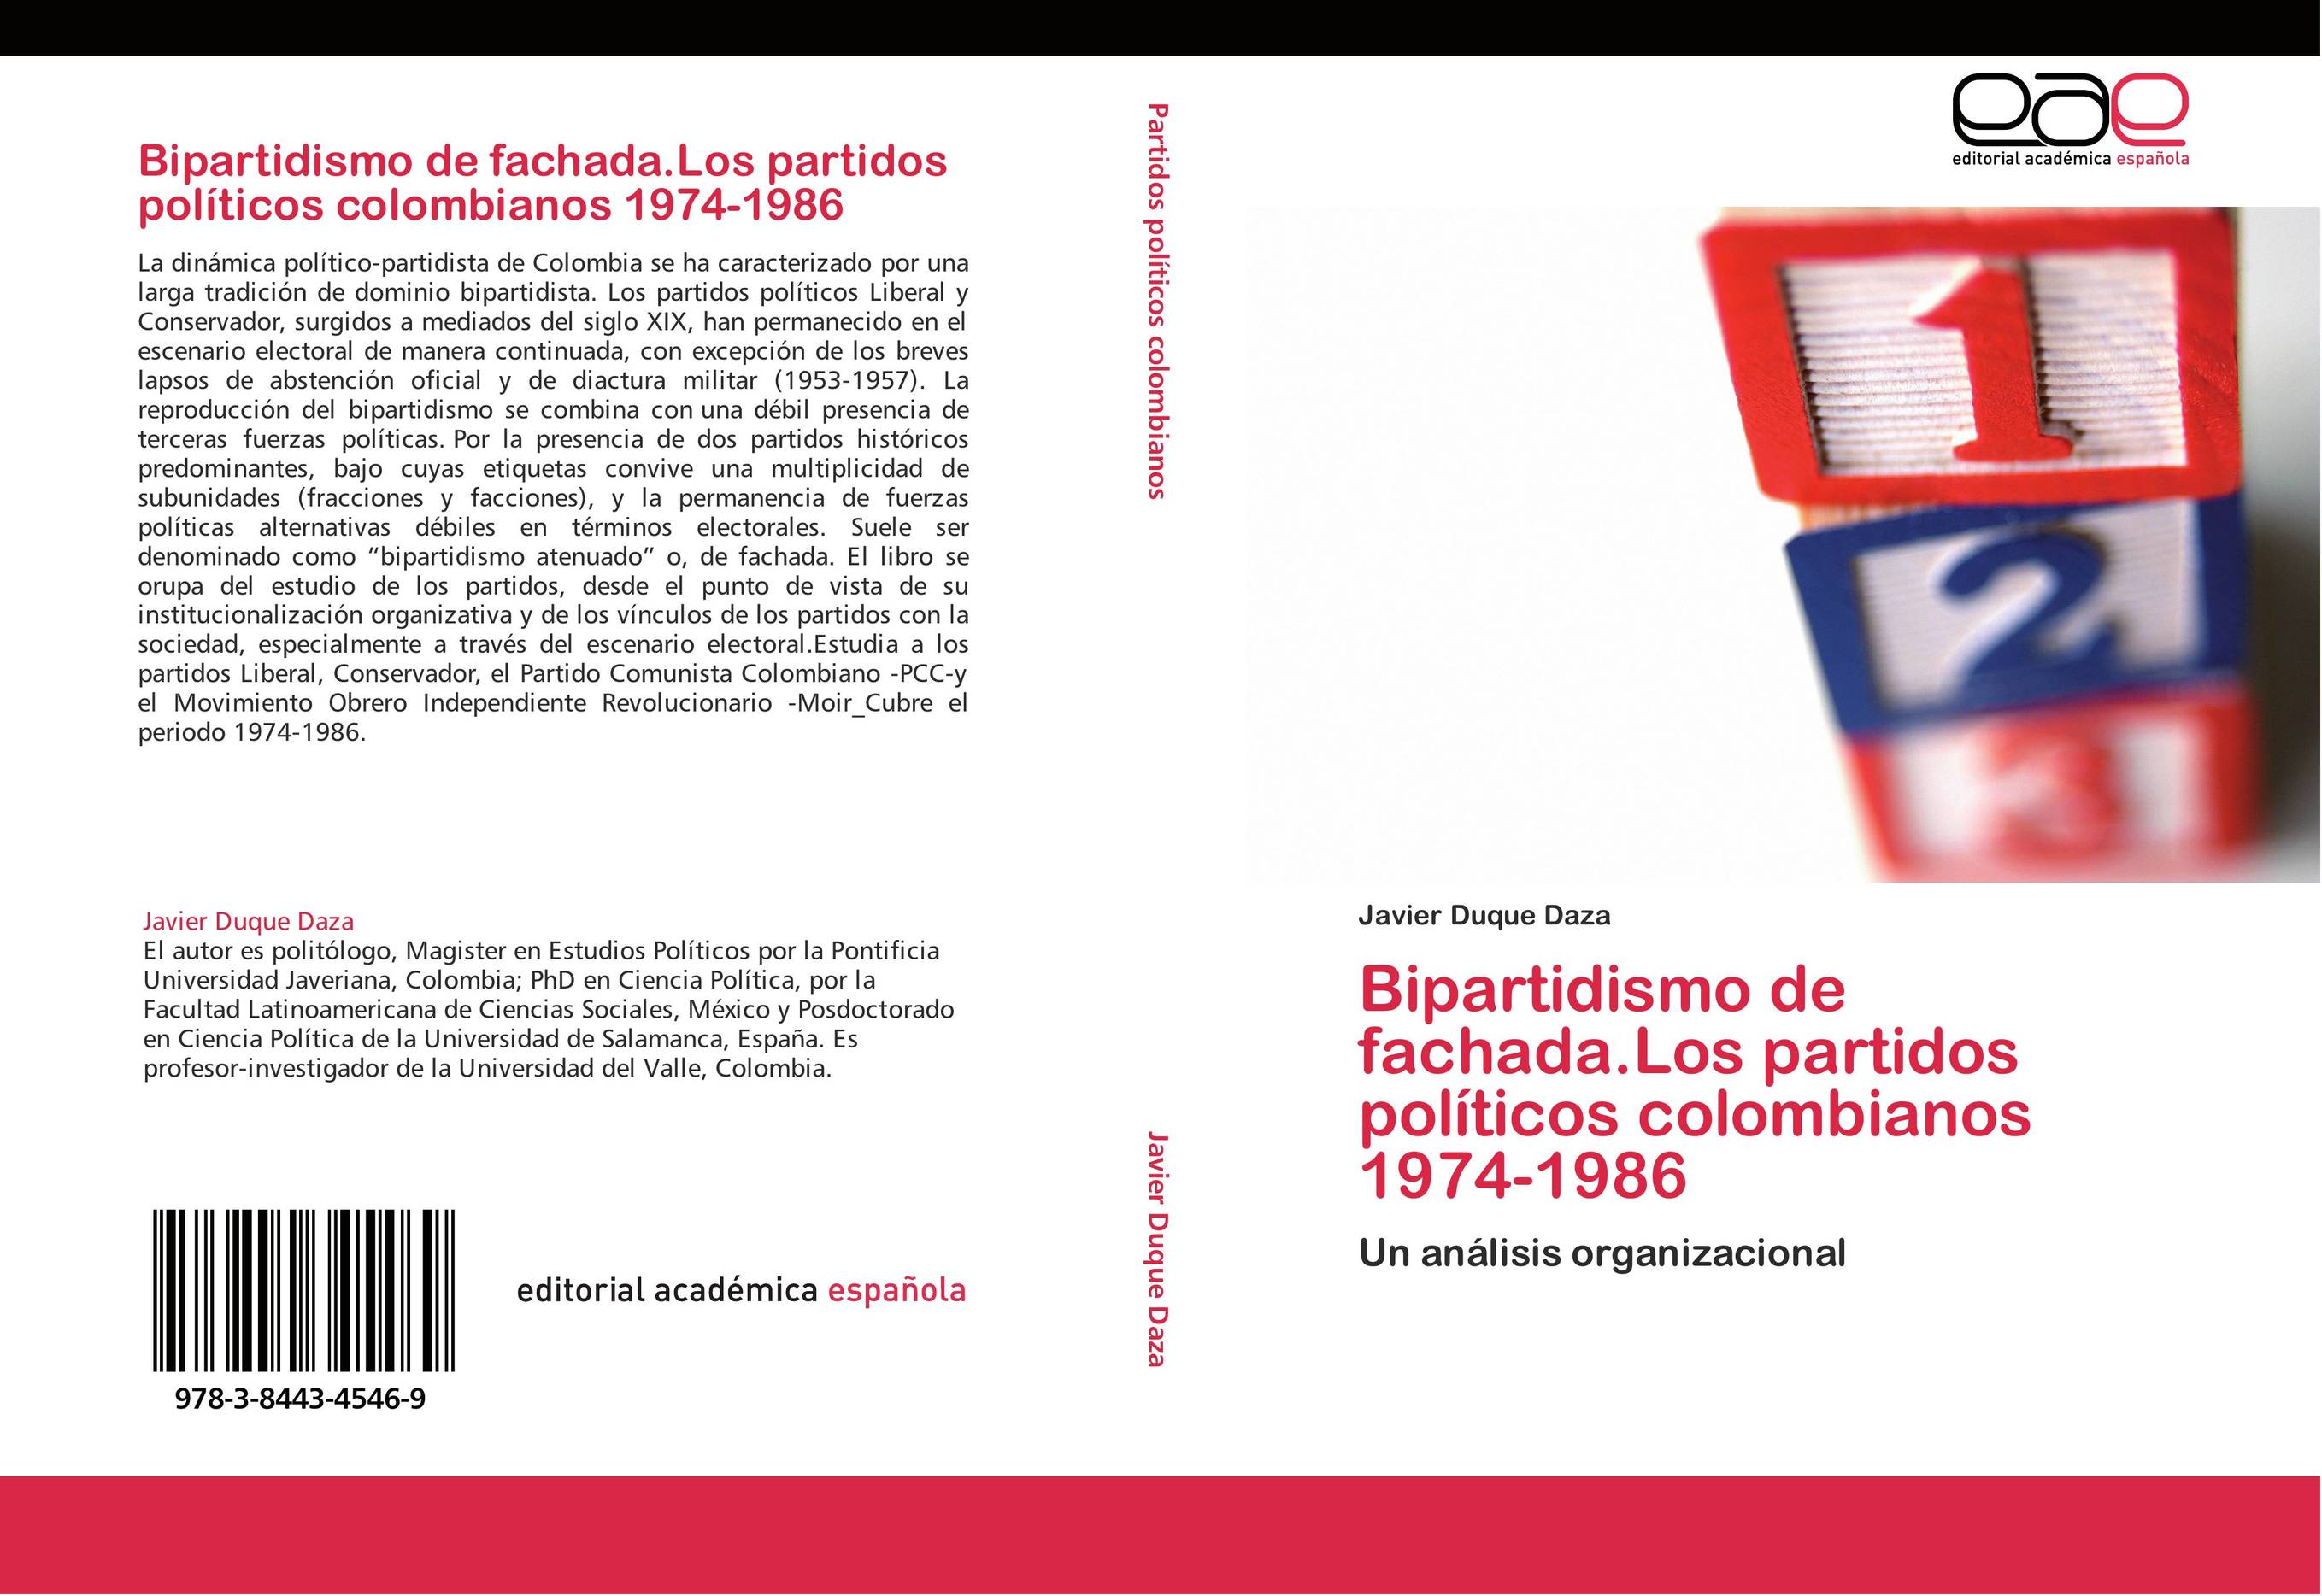 Bipartidismo de fachada.Los partidos políticos colombianos 1974-1986